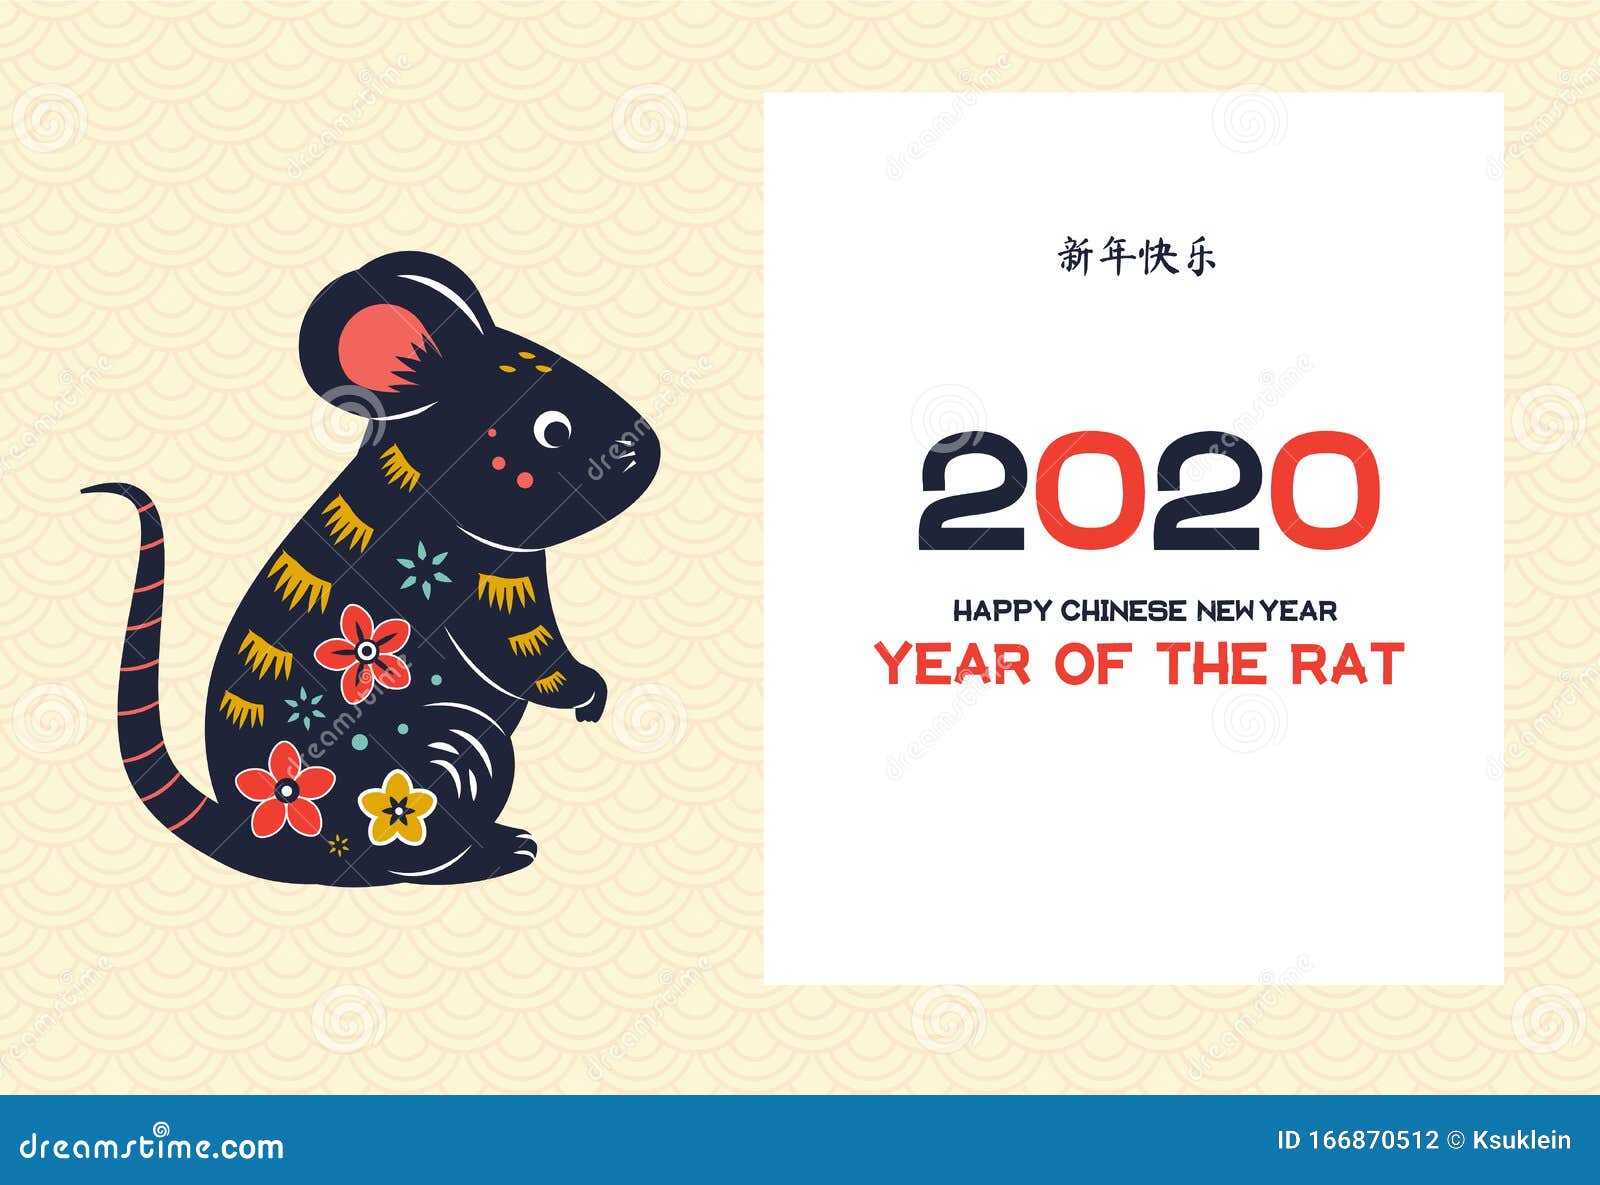 年老鼠chinese New Year Banner With Decorated Oriental Mouse 翻译意味着新年快乐向量例证 插画包括有模式 装饰